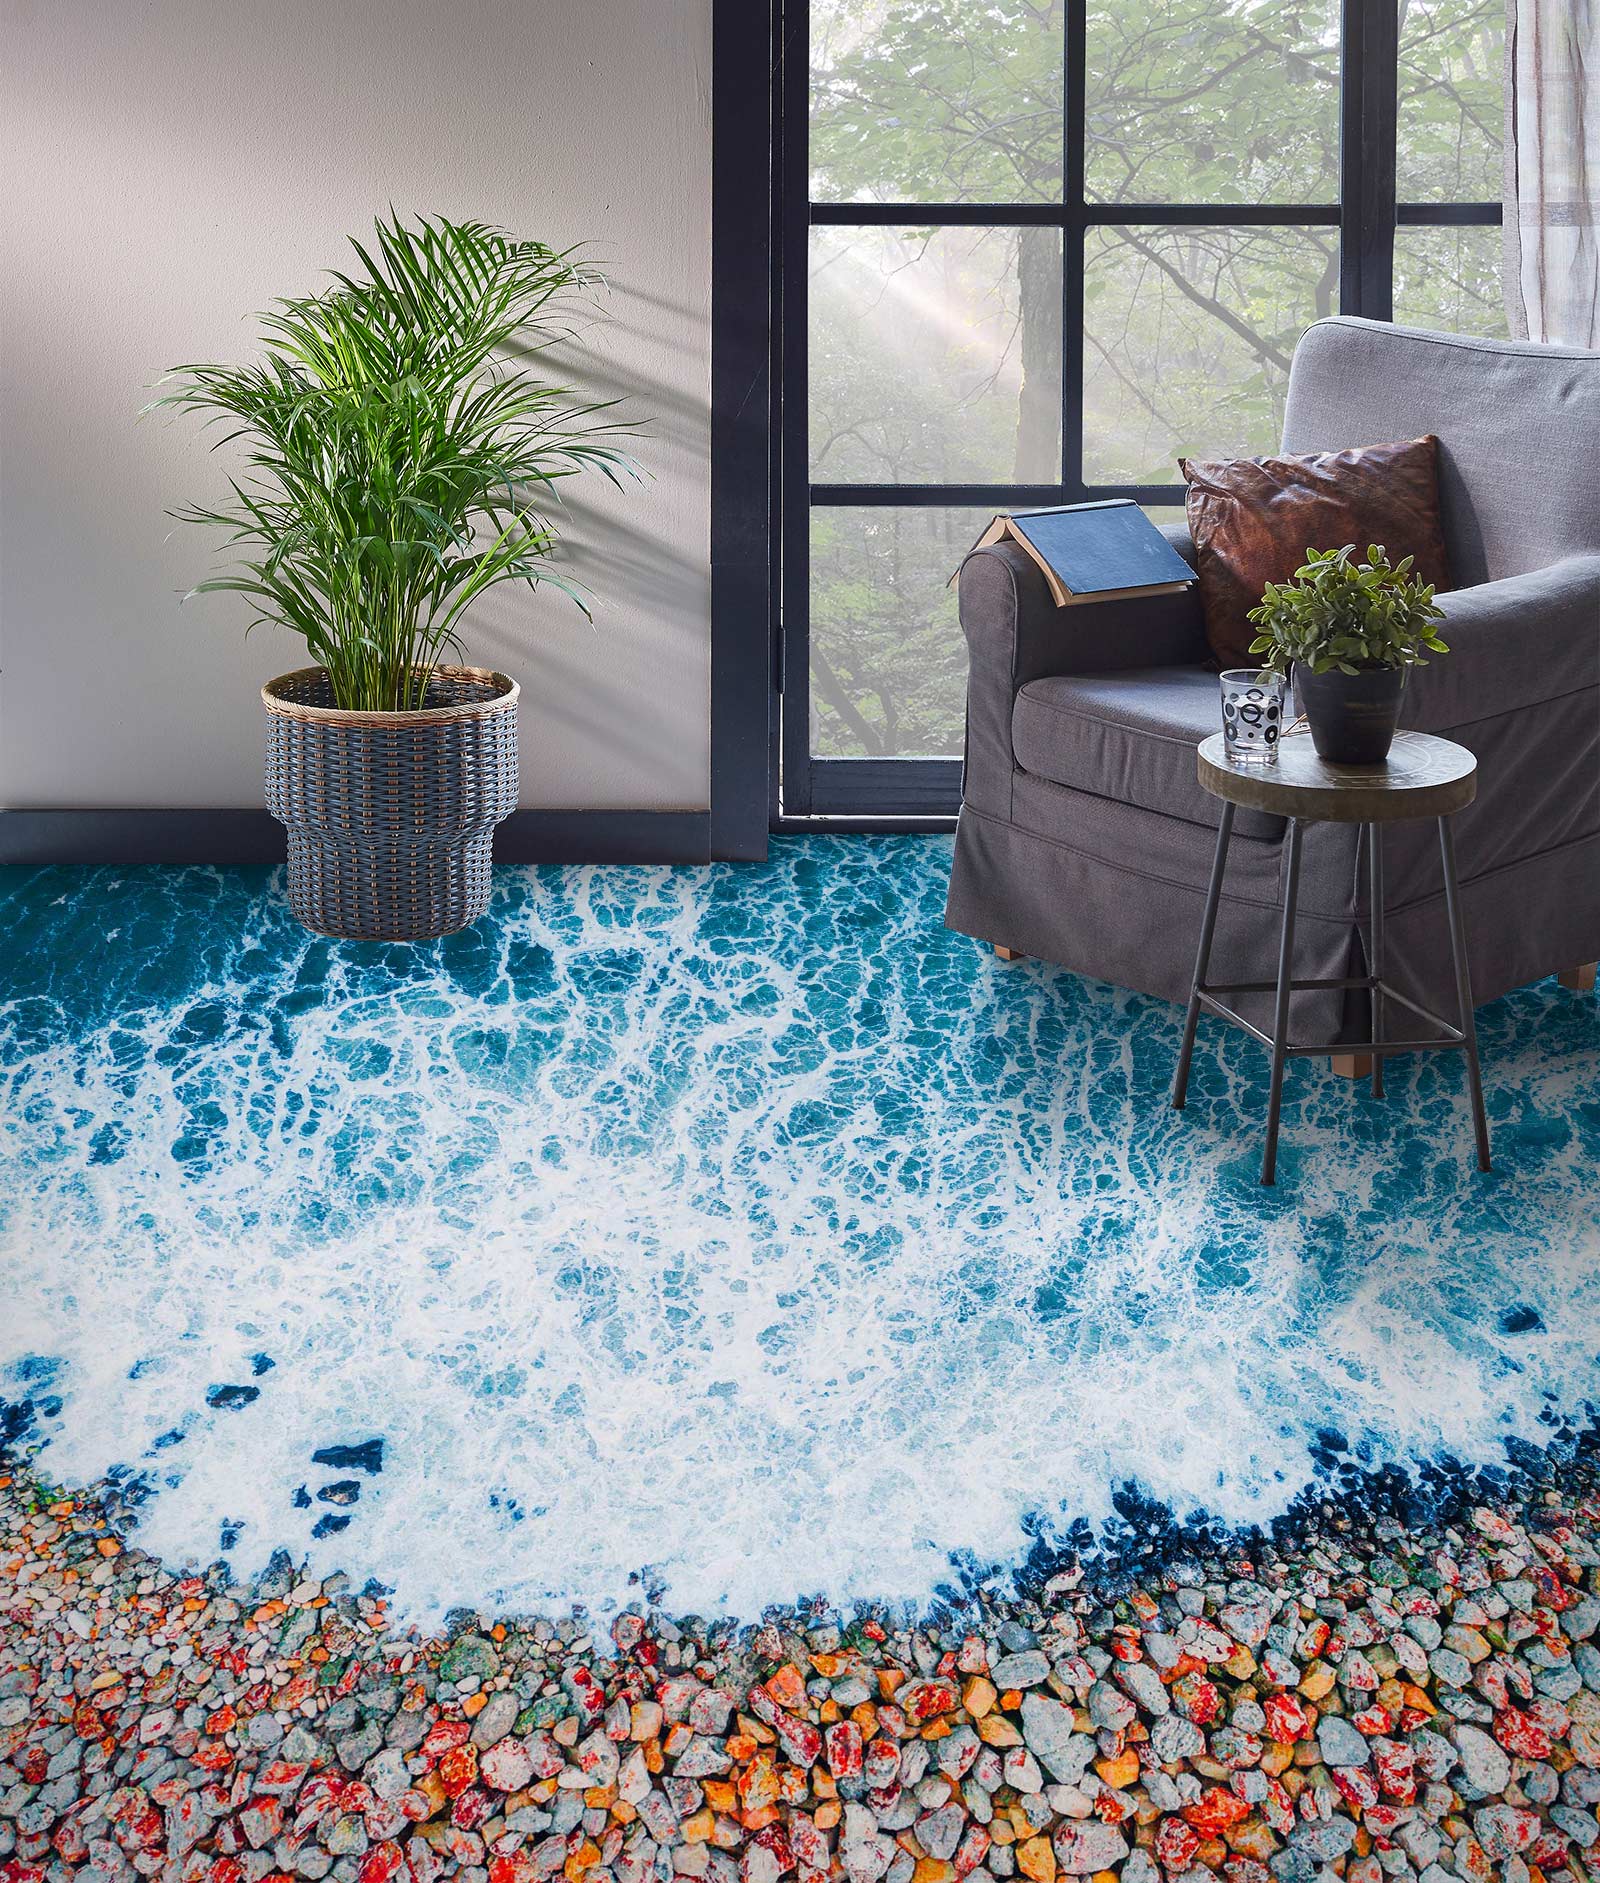 3D Colored Little Stones 470 Floor Mural  Wallpaper Murals Rug & Mat Print Epoxy waterproof bath floor